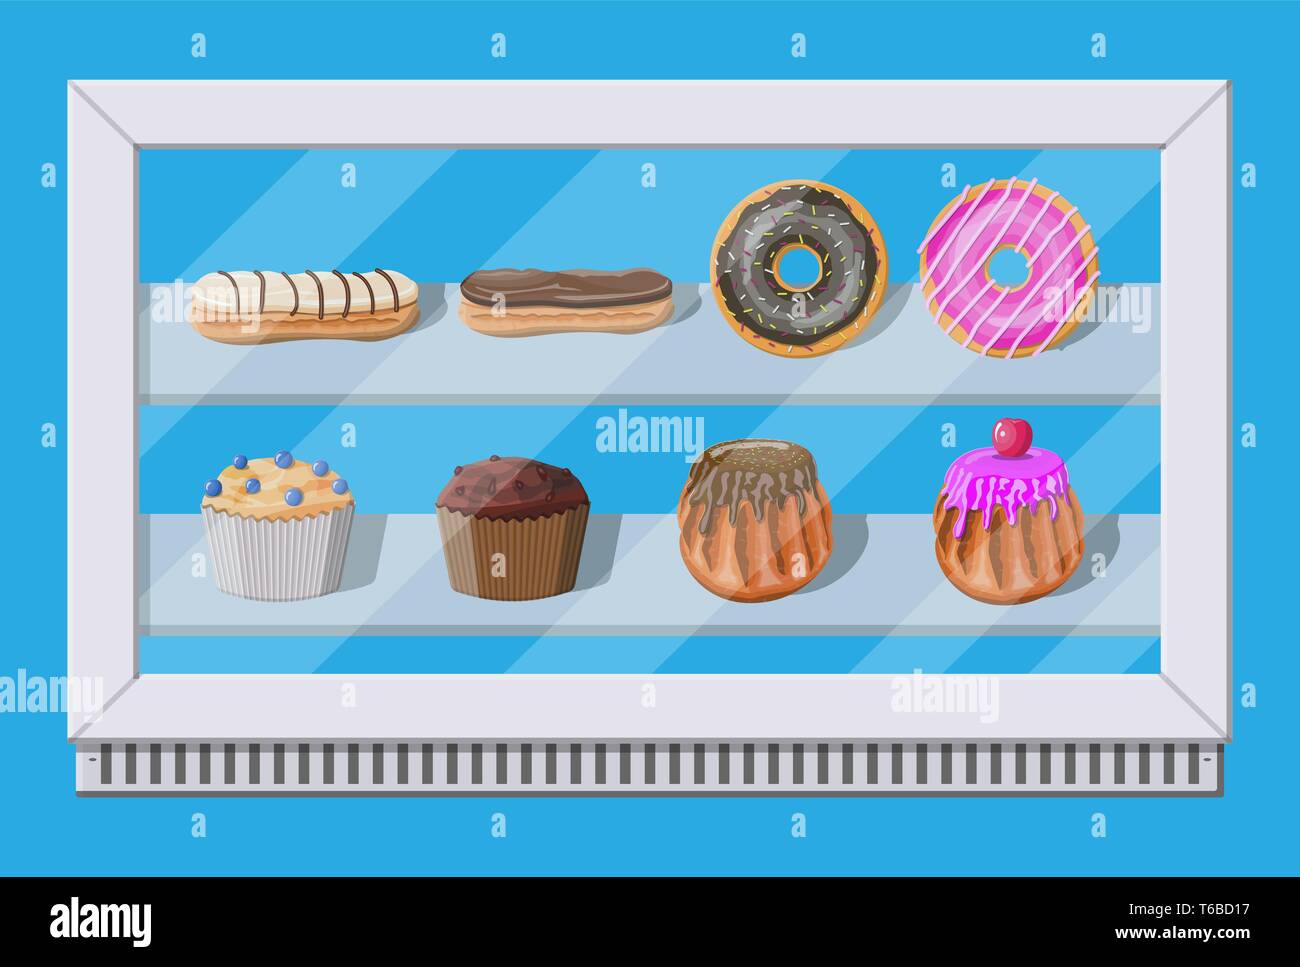 Bäckerei Vitrine Gefrierschrank mit Kuchen und Gebäck. Donut, Muffin,  Cupcake und eclair. Vektorgrafik in flacher Form Stock-Vektorgrafik - Alamy